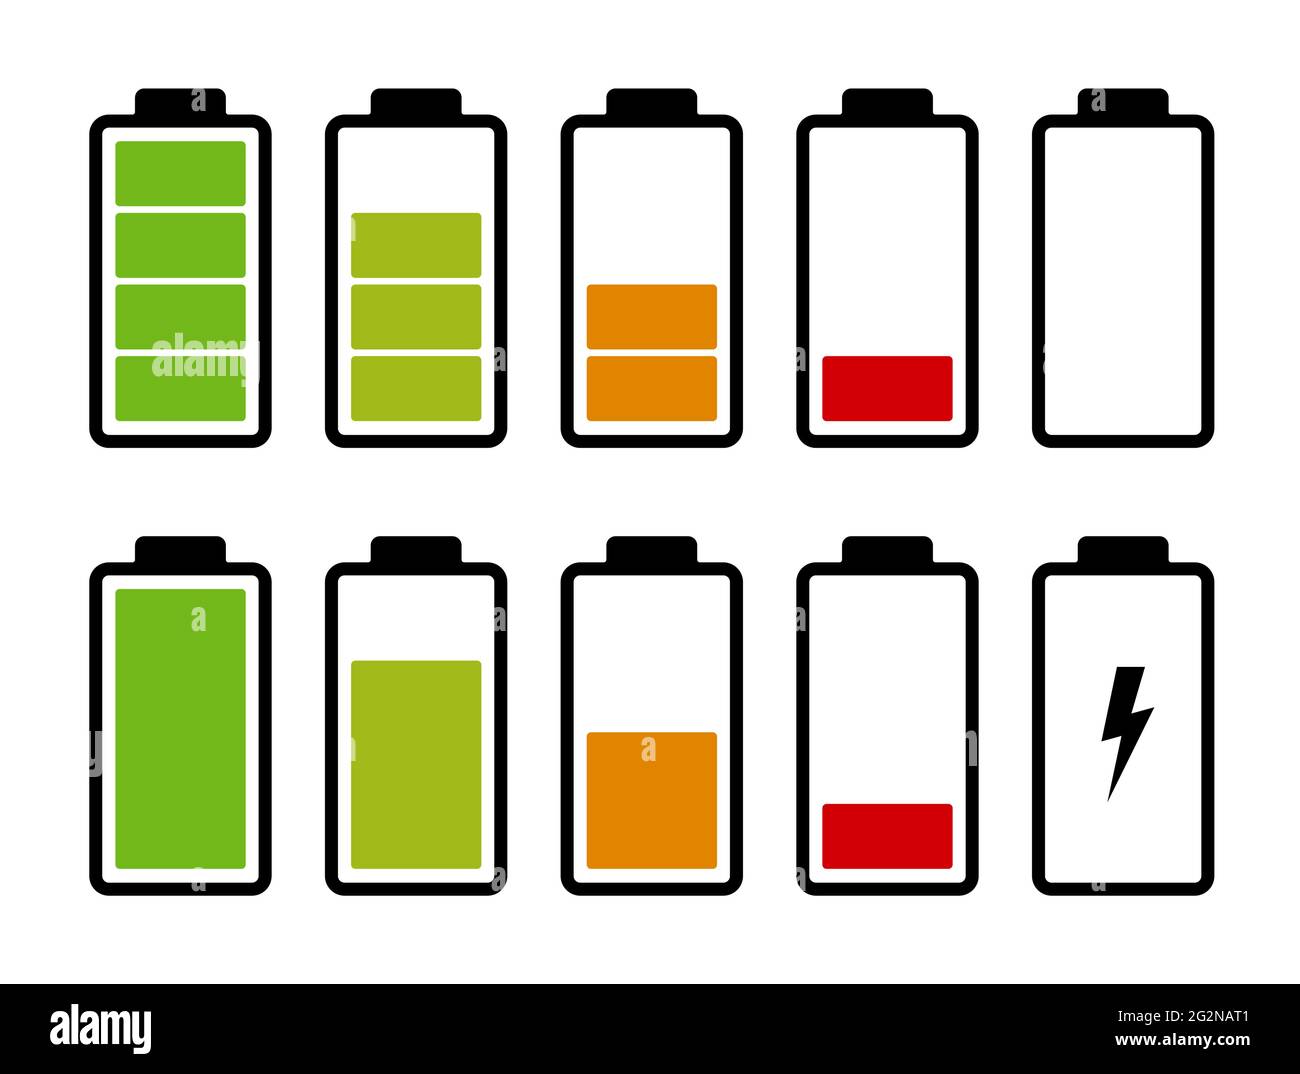 Indicateur de niveau de charge de la batterie. Ensemble d'icônes de batterie  Image Vectorielle Stock - Alamy